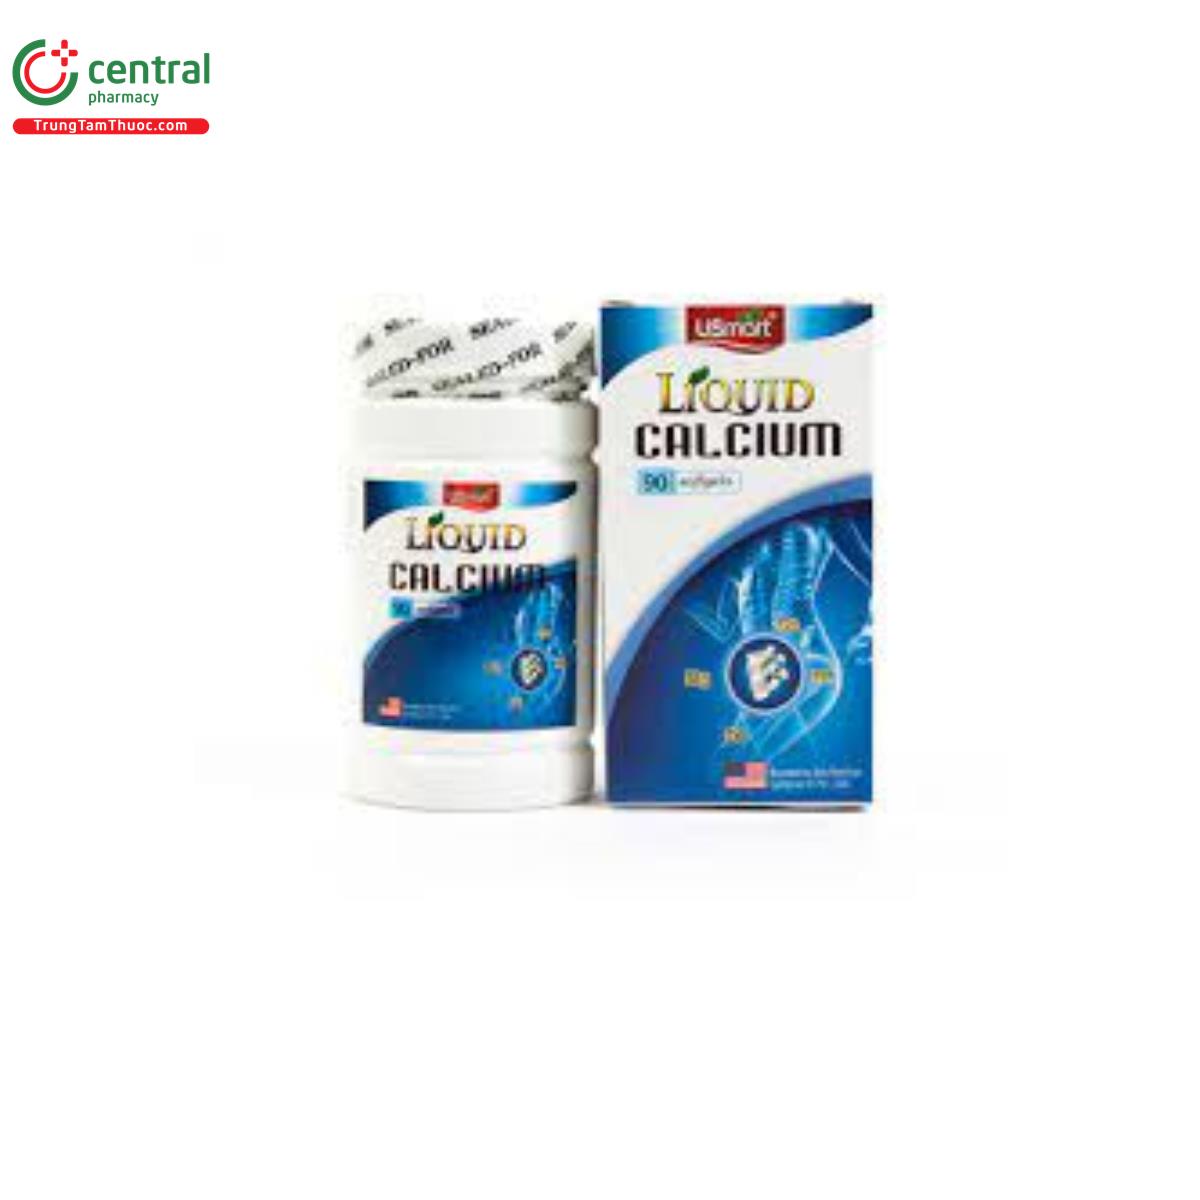 Liquid Calcium USmart